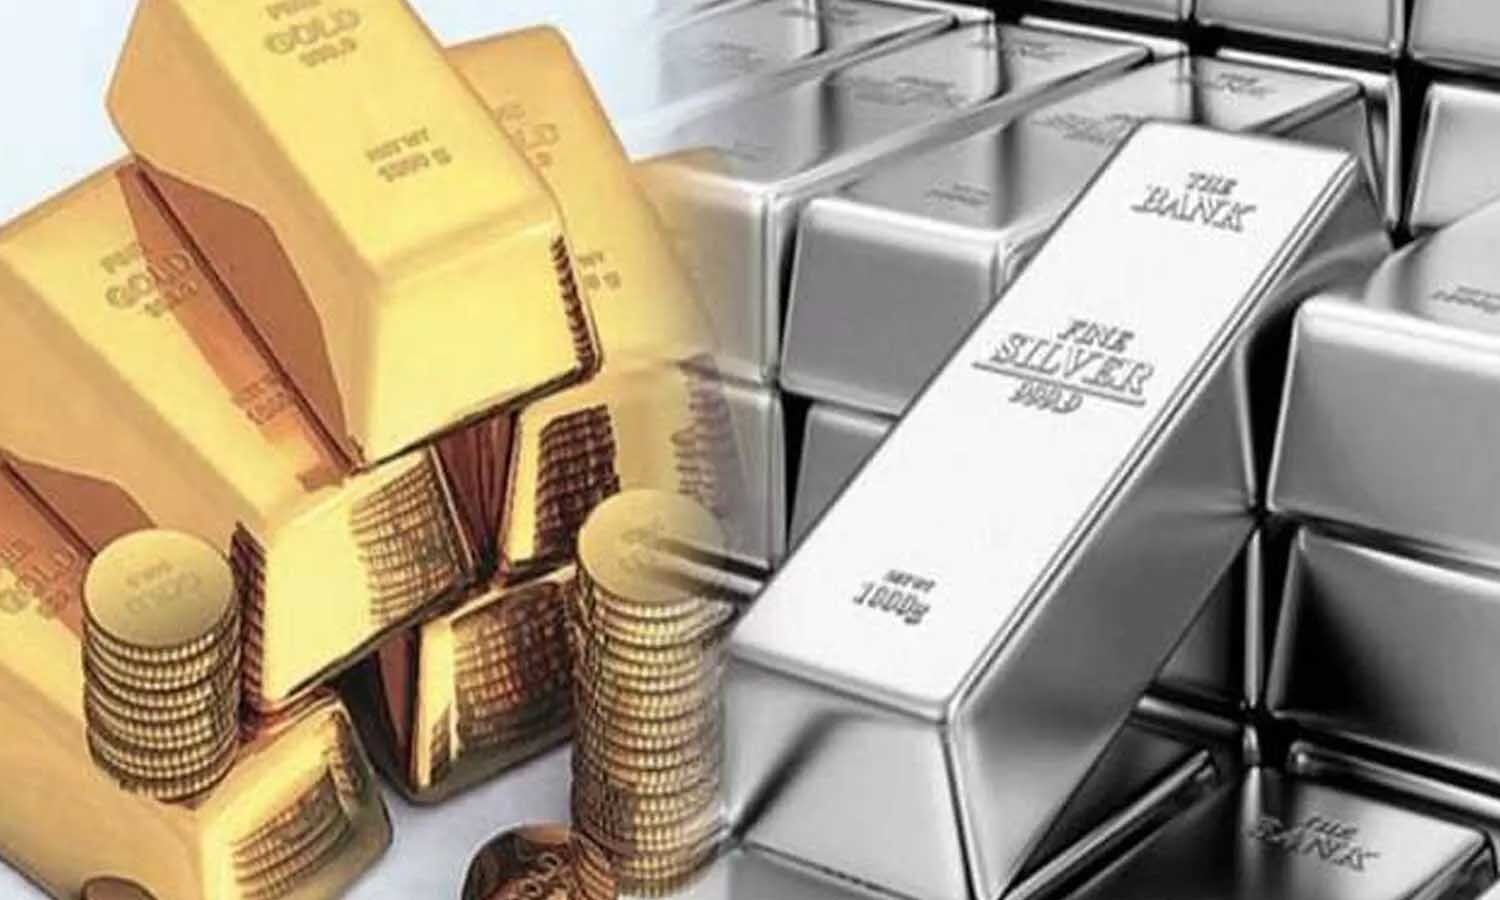 Lucknow Gold Silver Price Today: चांदी के भाव में आई 1900 रुपये की गिरावट, सोना भी धड़ाम; जानें लें अपने शहर के नए भाव